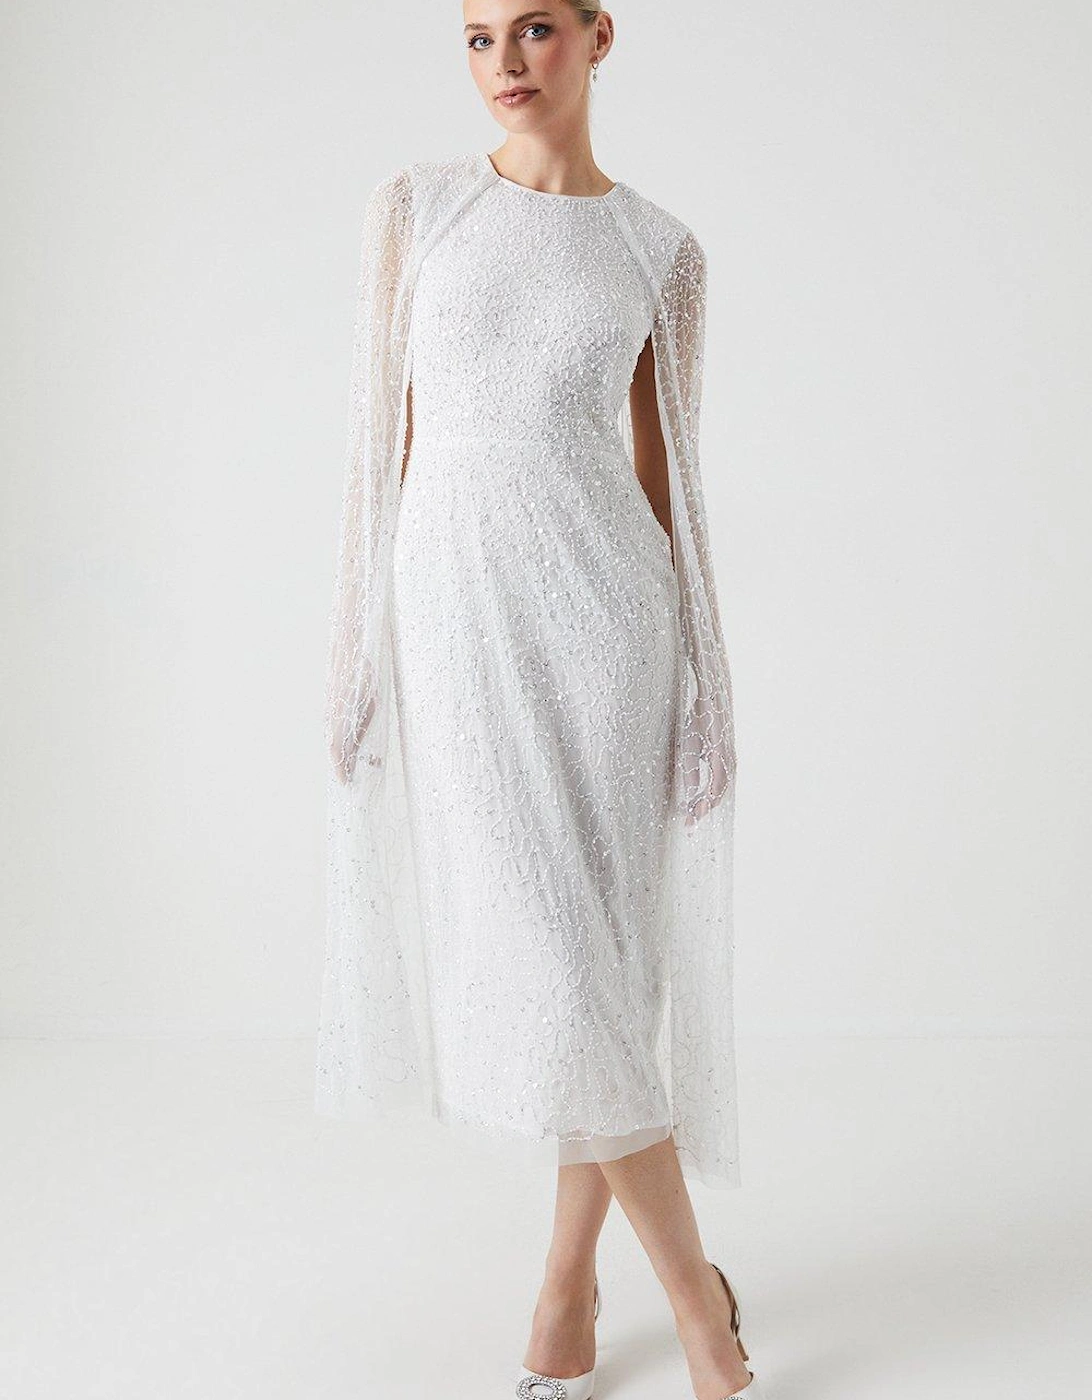 Embellished Cape Sleeve Wedding Dress, 6 of 5